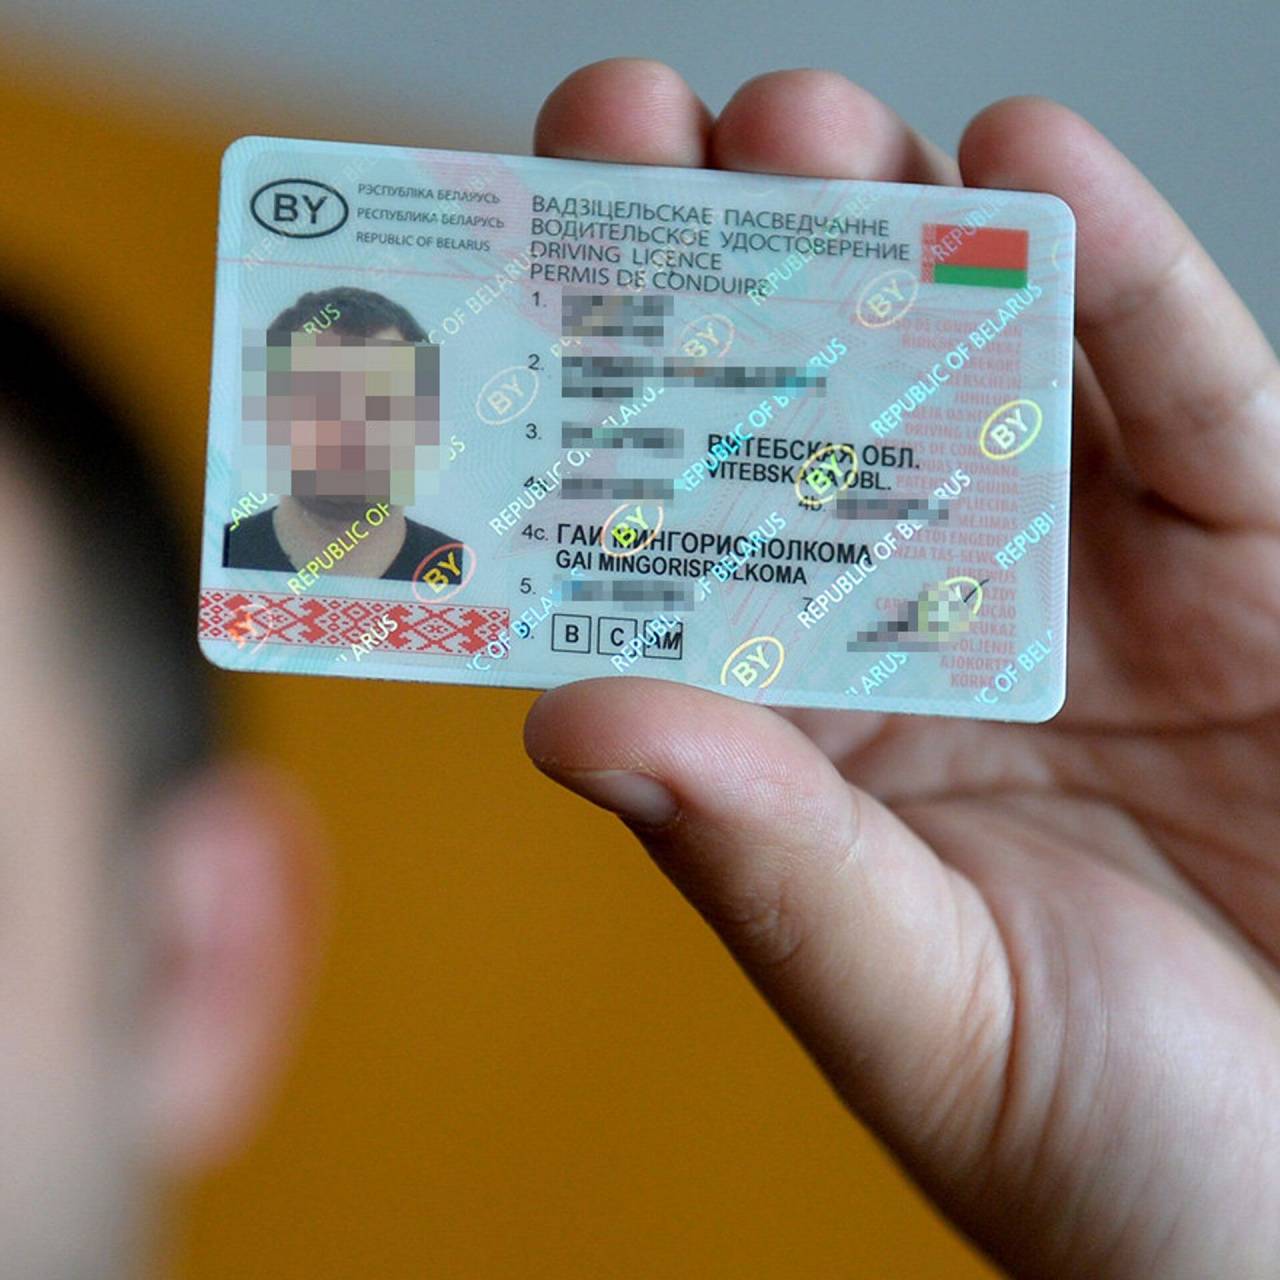 В Беларуси водительские права продлевают до 20 лет, упрощают прохождение техосмотра: Лукашенко подписал новый указ